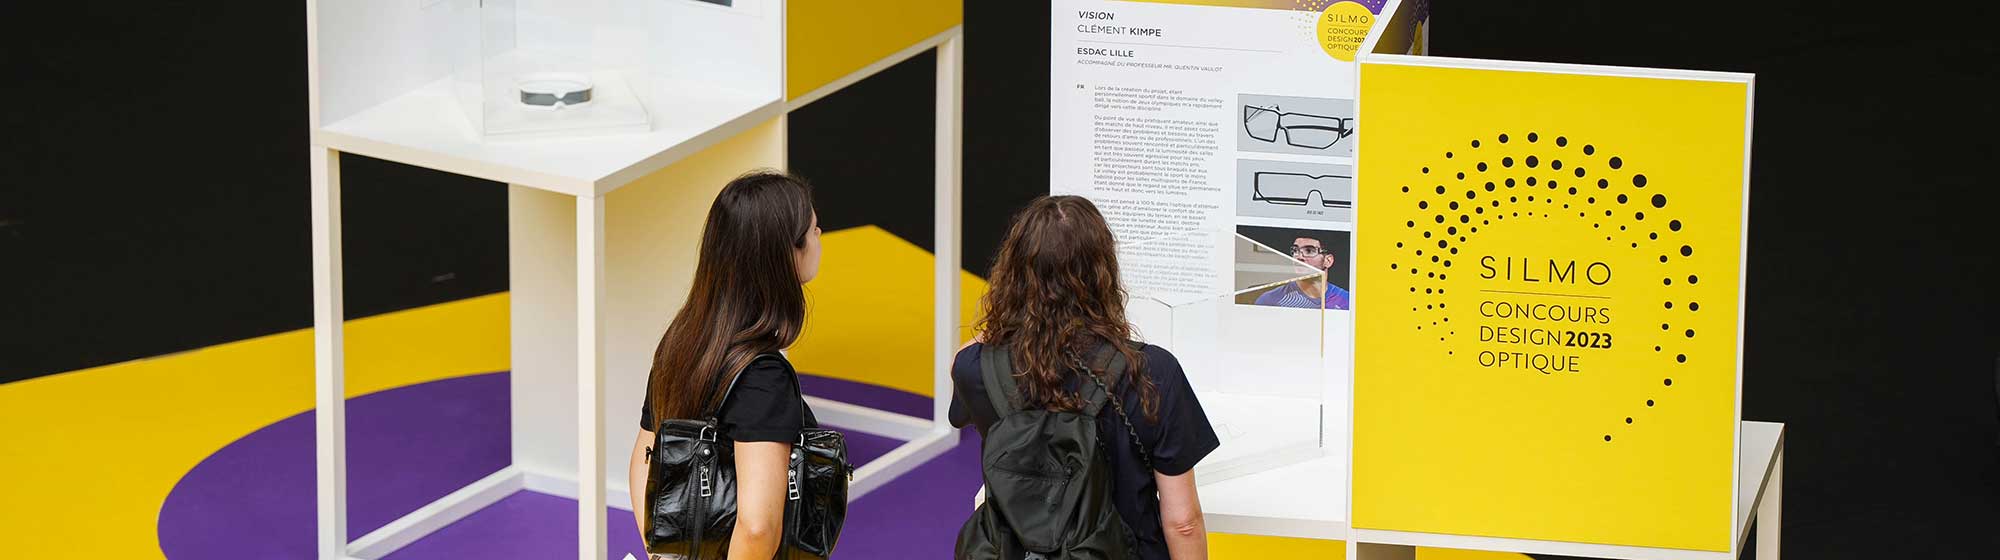 Deux femmes devant le panneau du Concours de design optique 2023